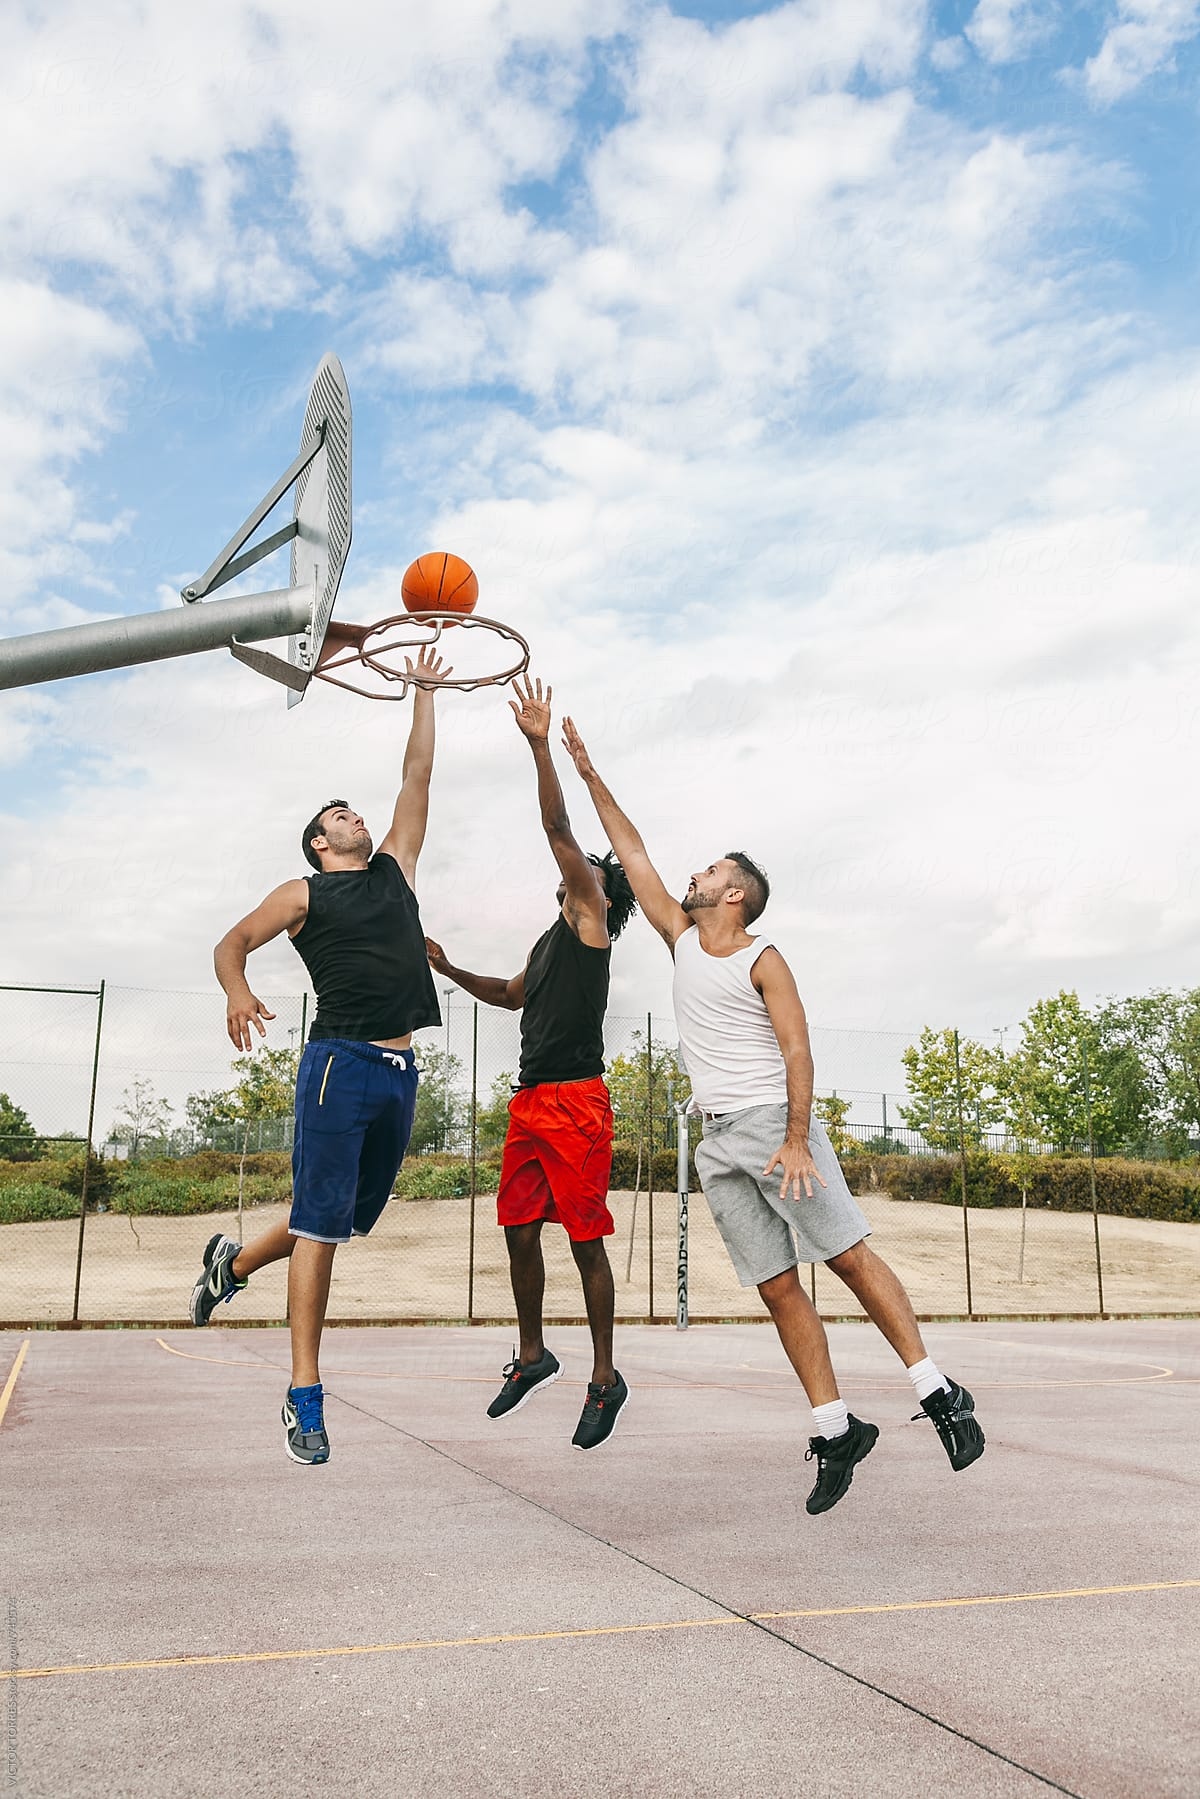 Basketball | Street Basketball Player